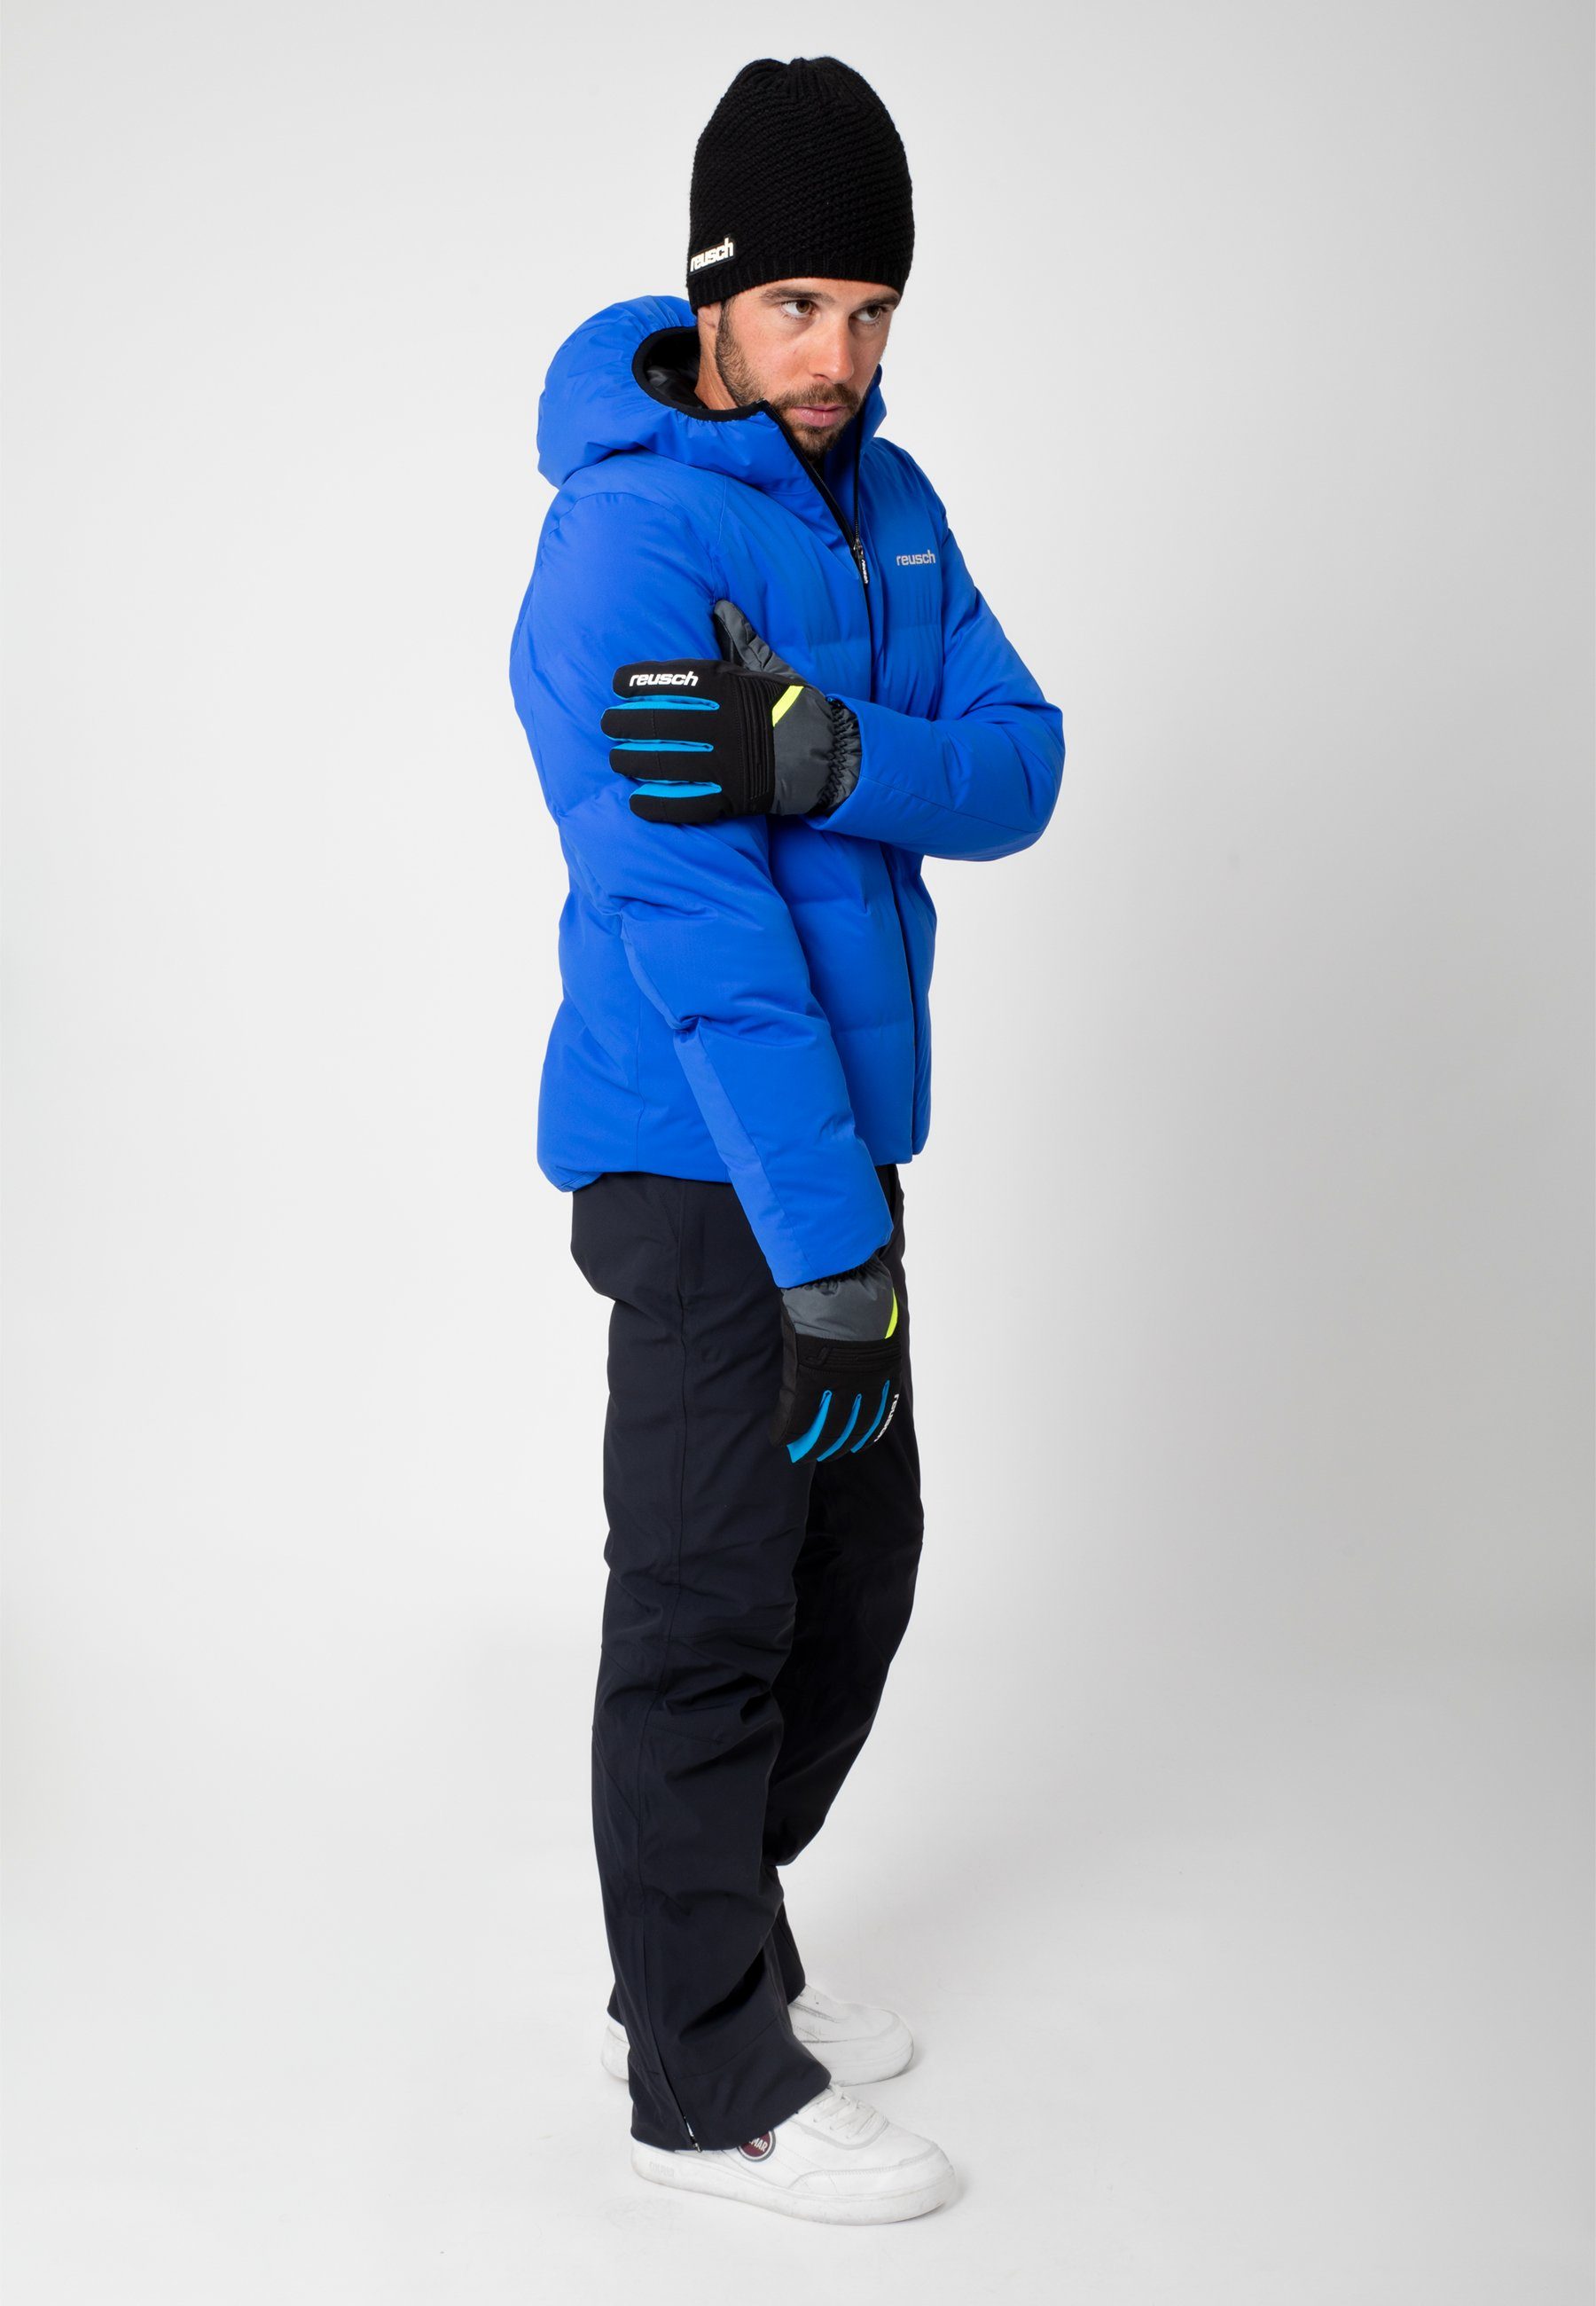 Reusch Skihandschuhe Baldo R-TEX XT warm und wasserdicht grau-gelb